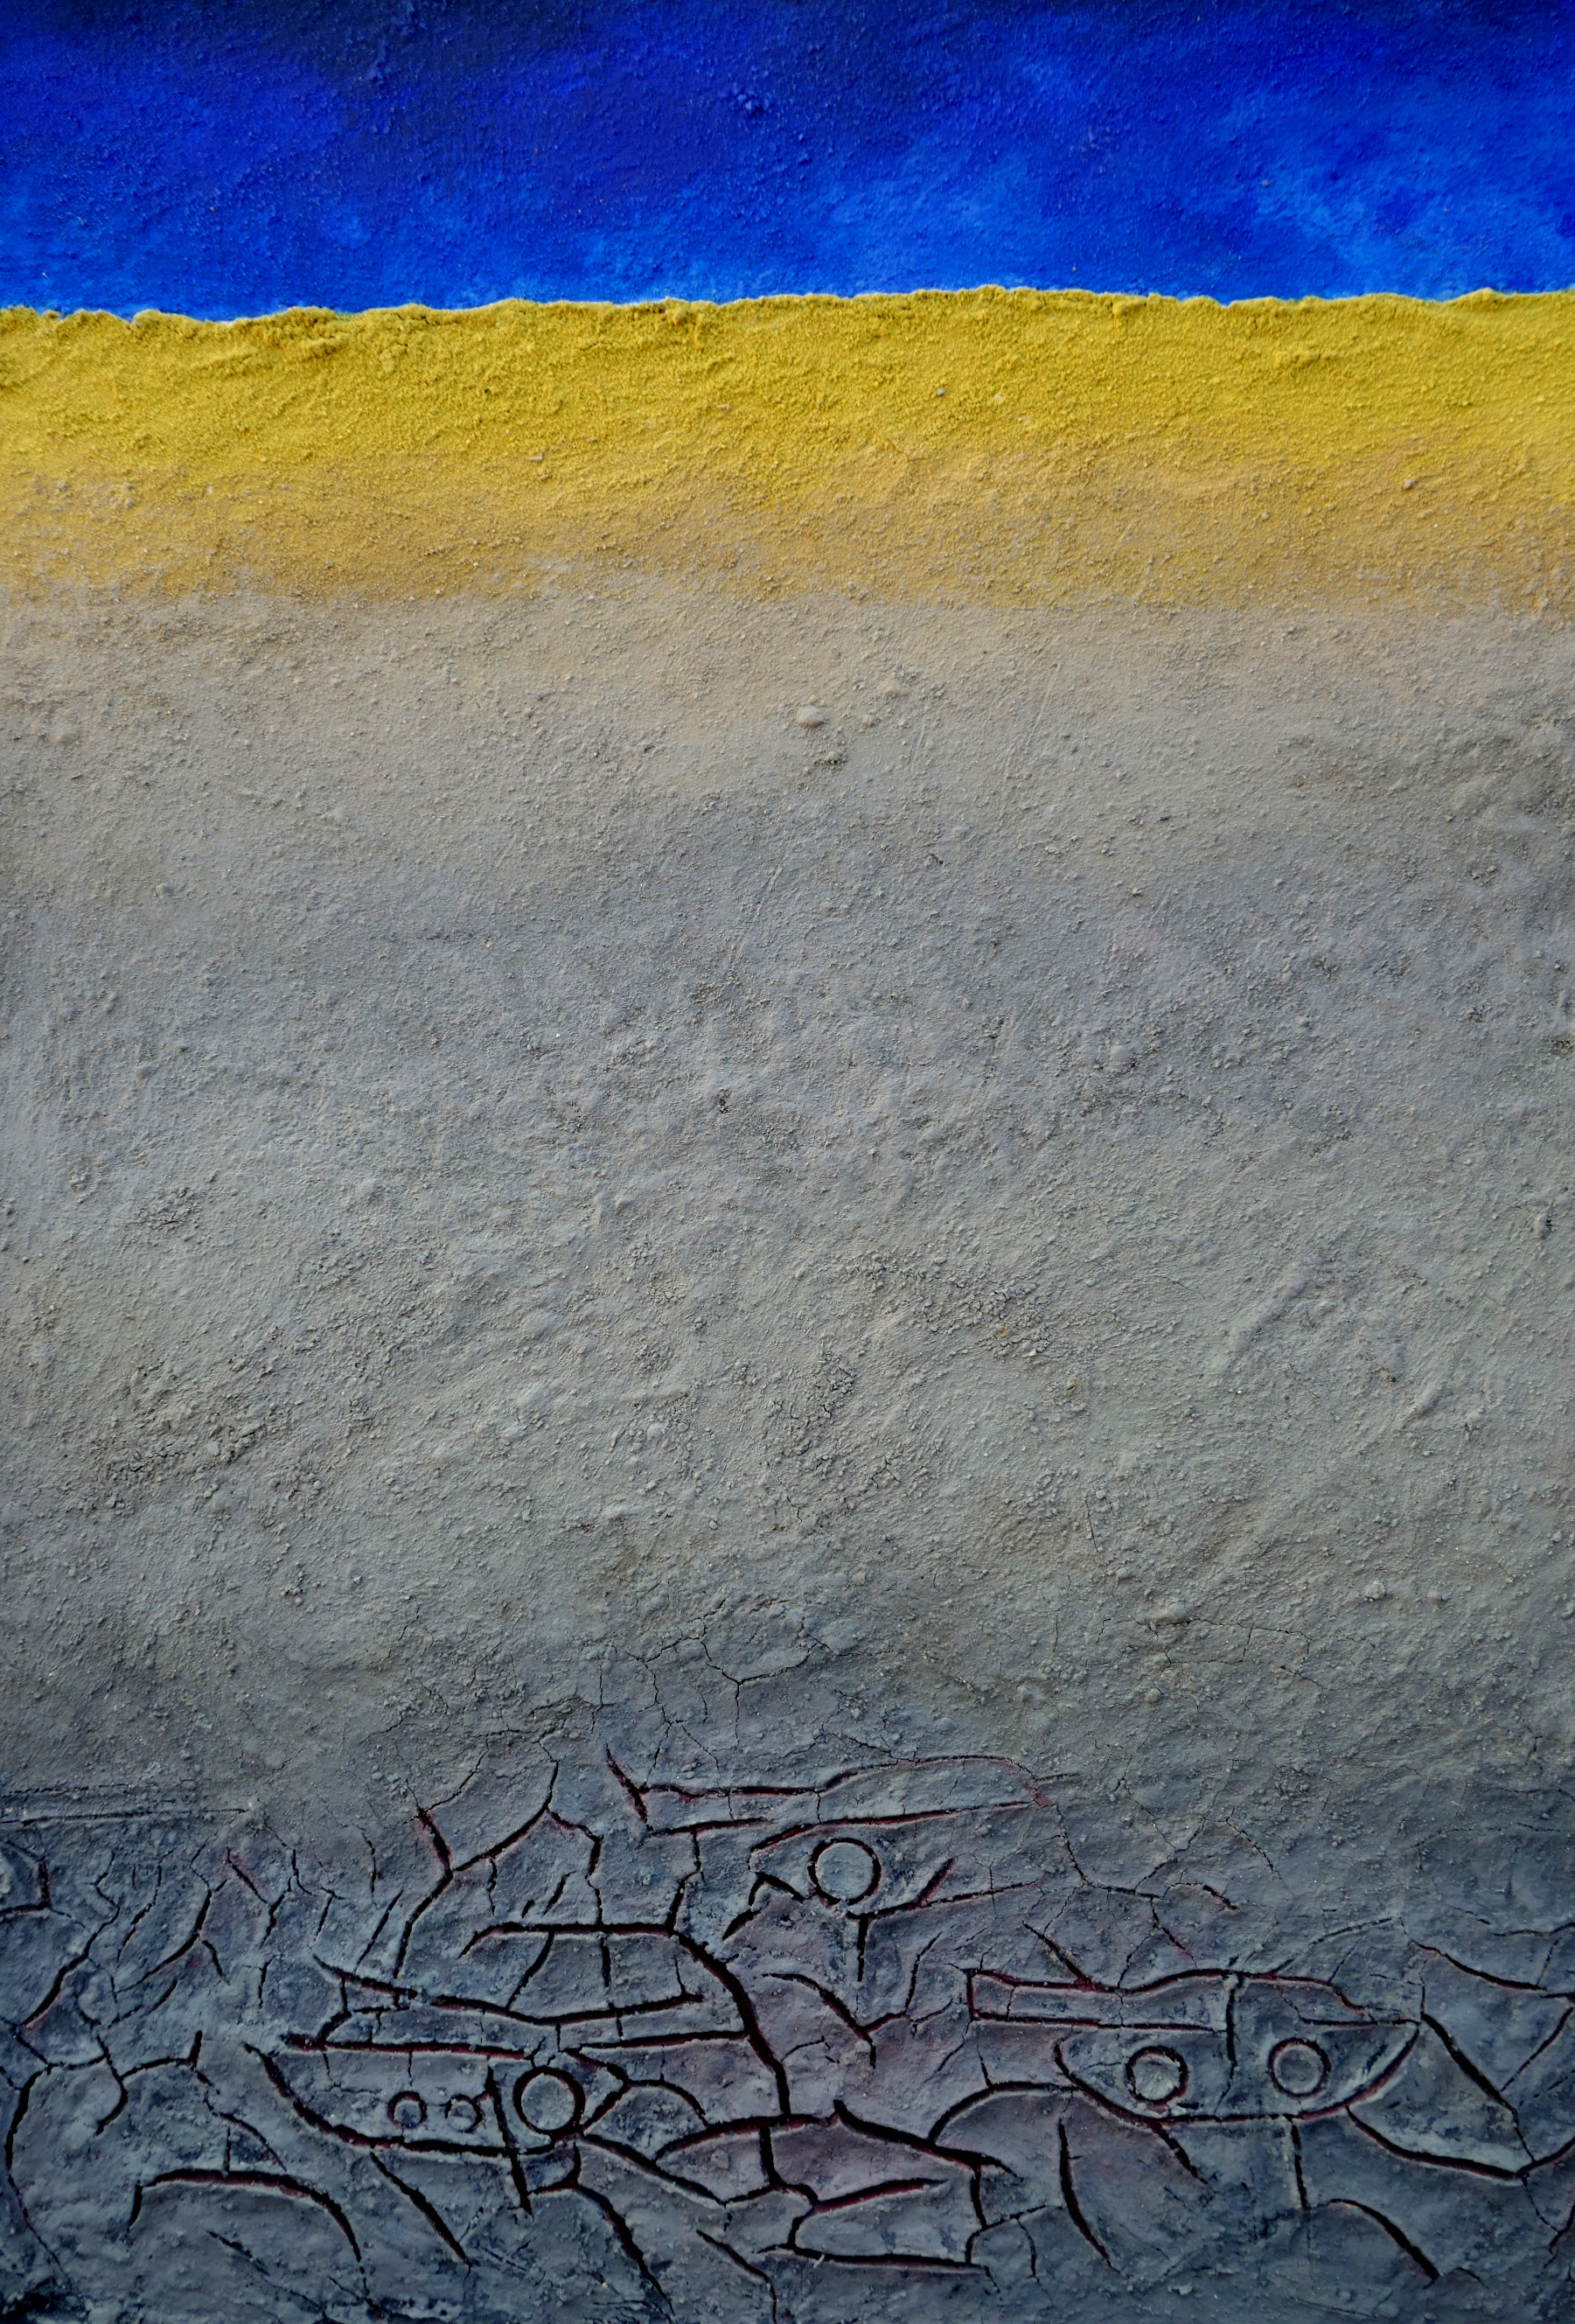 Kunstwerk "gestörtes Land", blauer Streifen über einem gelben Streifen, darunter hellgrau, darunter blaugraue Fläche wie ausgedörrter Boden